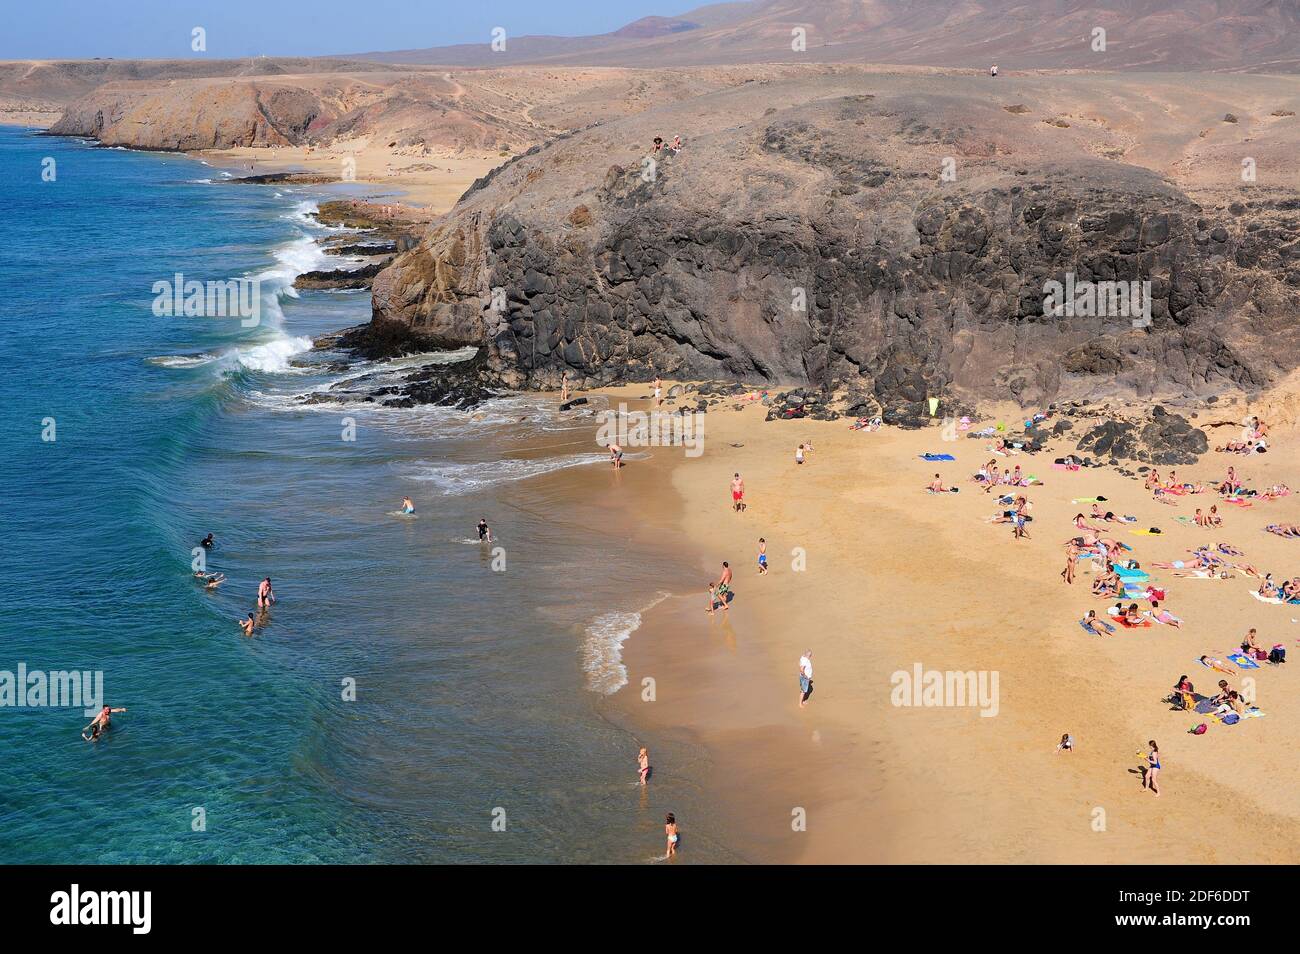 Playas Papagayo, Del Pozo and Mujeres, Los Ajaches. Lanzarote Island, Las Palmas, Canary Islands, Spain. Stock Photo